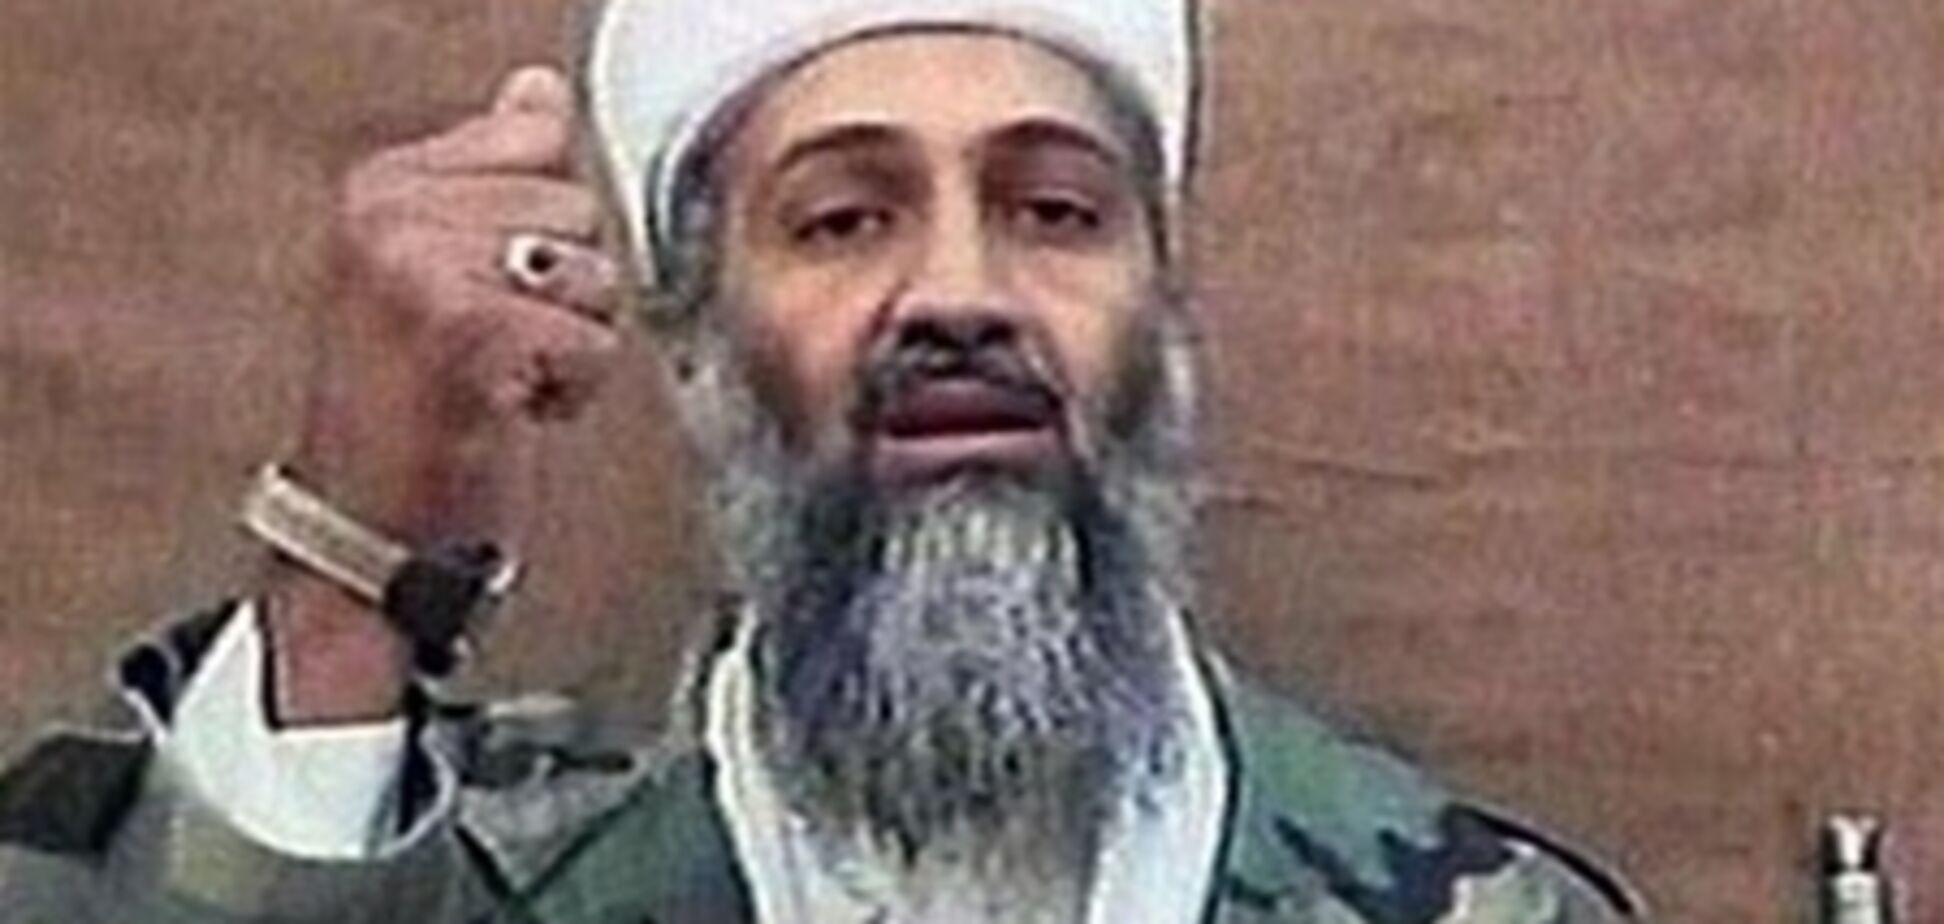 ЗМІ: бен Ладена, який переховувався в Пакистані, штрафували за порушення ПДР